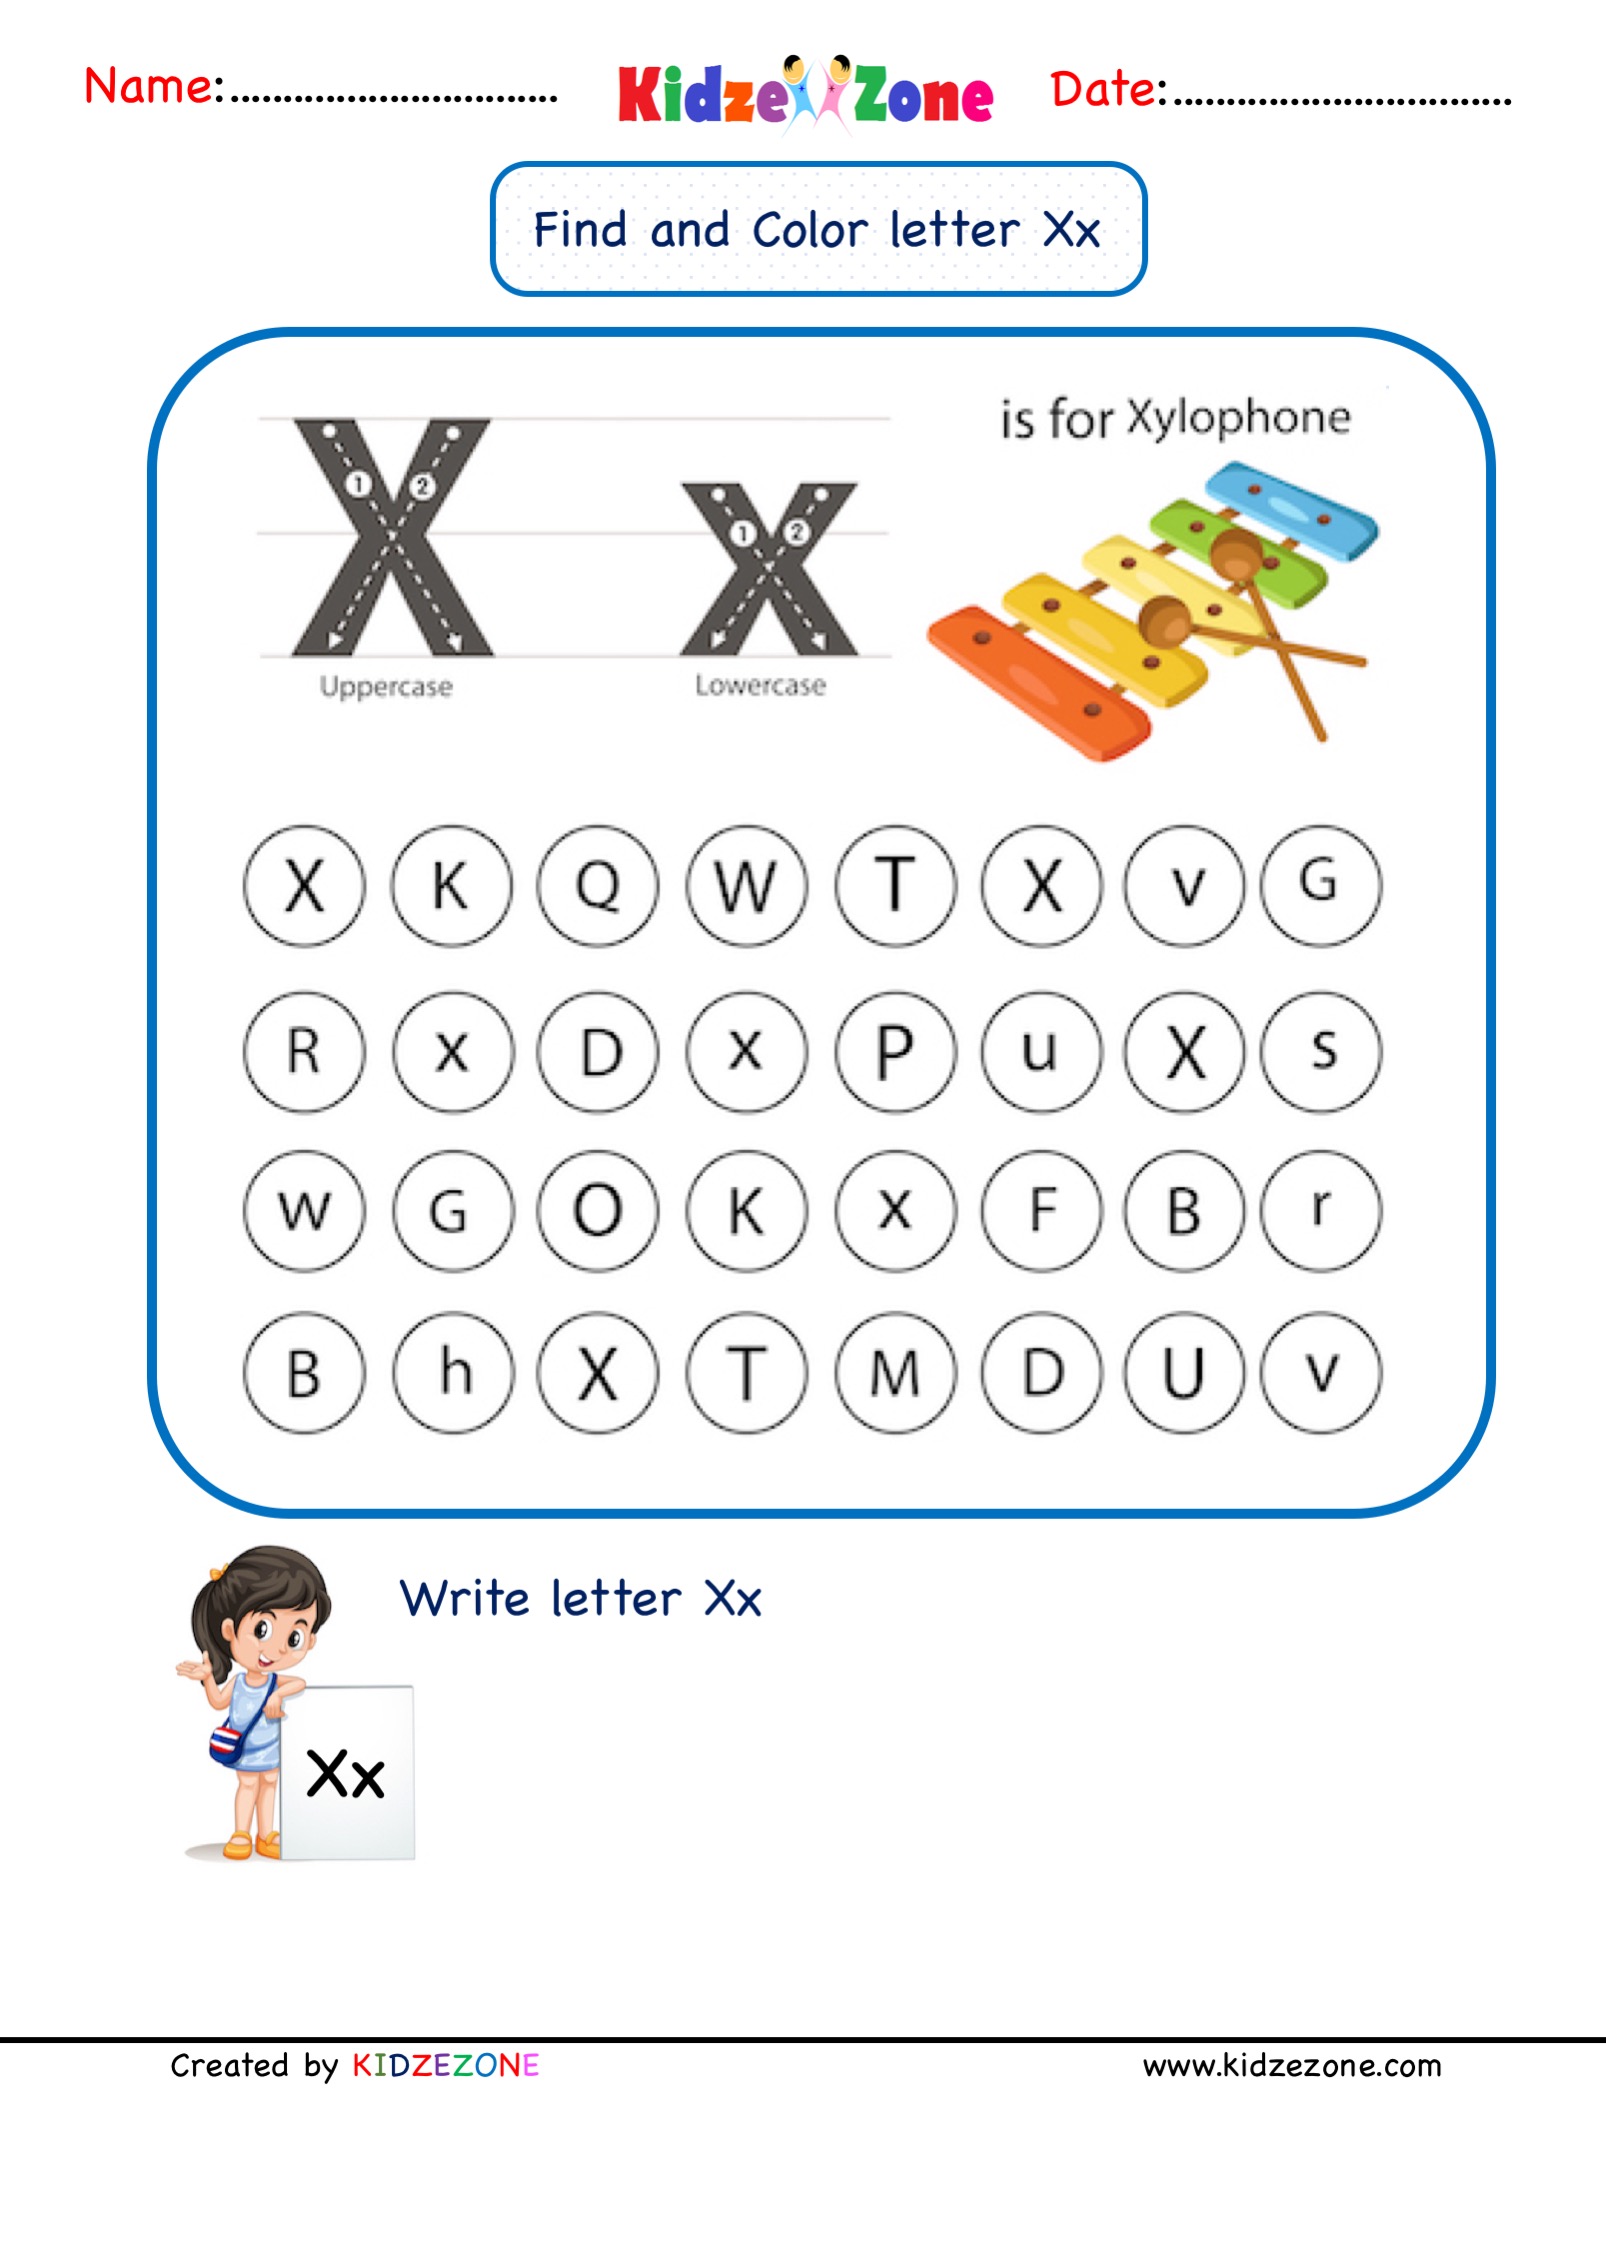 kindergarten-letter-x-worksheets-find-and-color-kidzezone